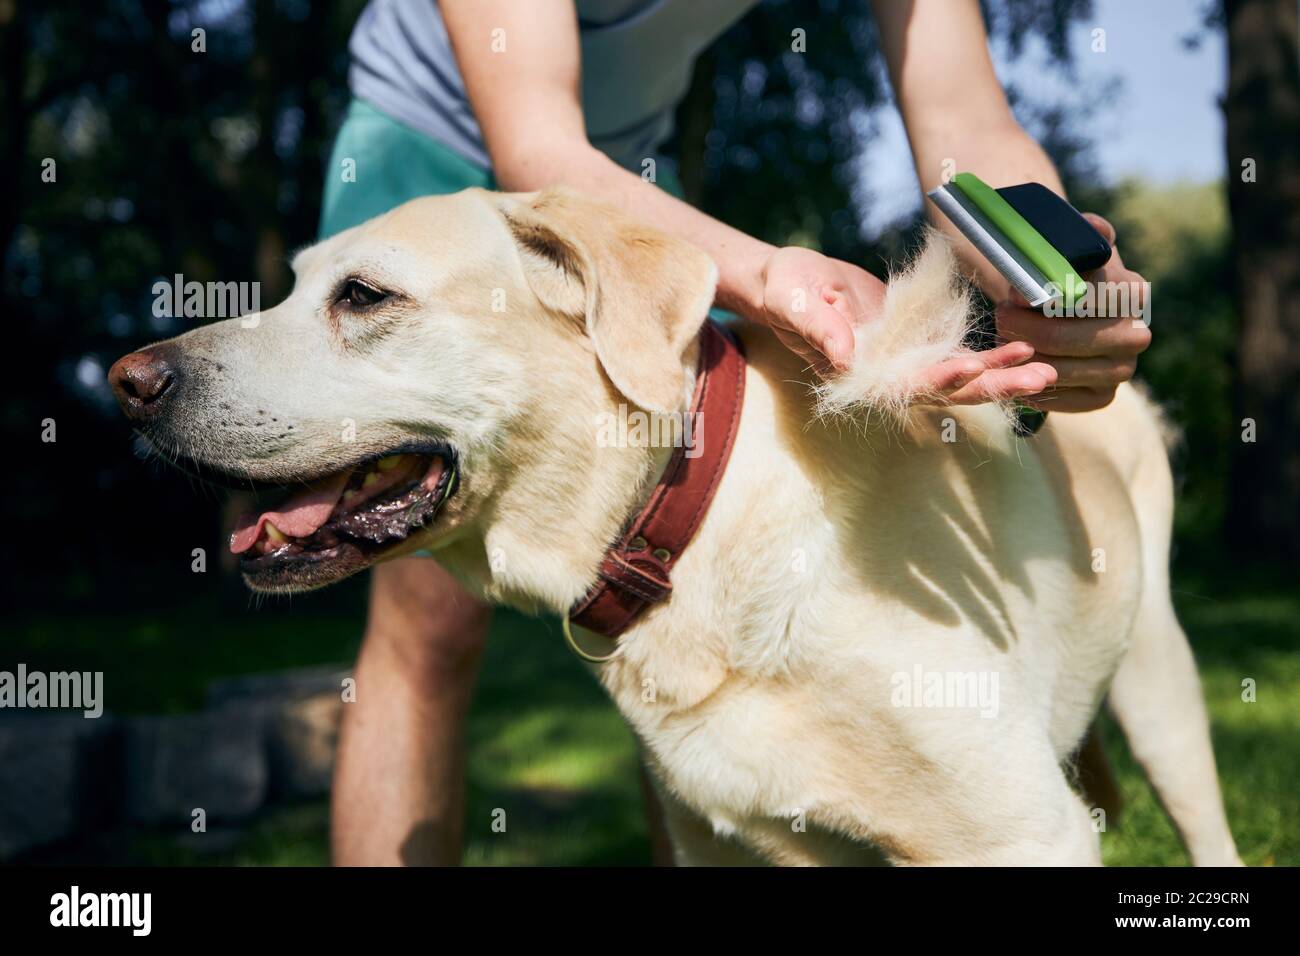 Soins de routine pour chiens. Le propriétaire d'un animal de compagnie se brosse la fourrure de son labrador Retriever. Banque D'Images